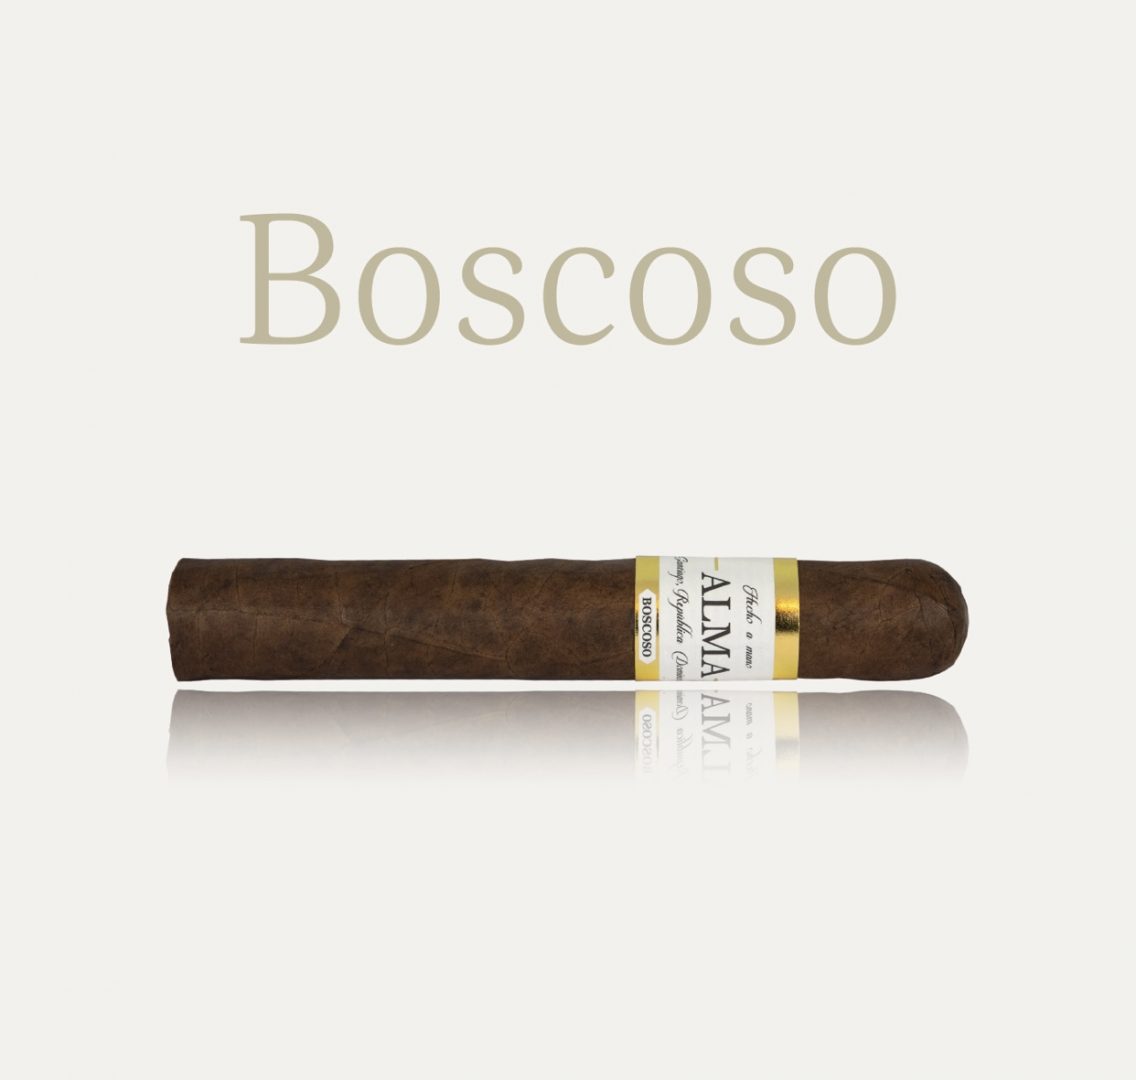 Boscoso by ALMA Cigarros